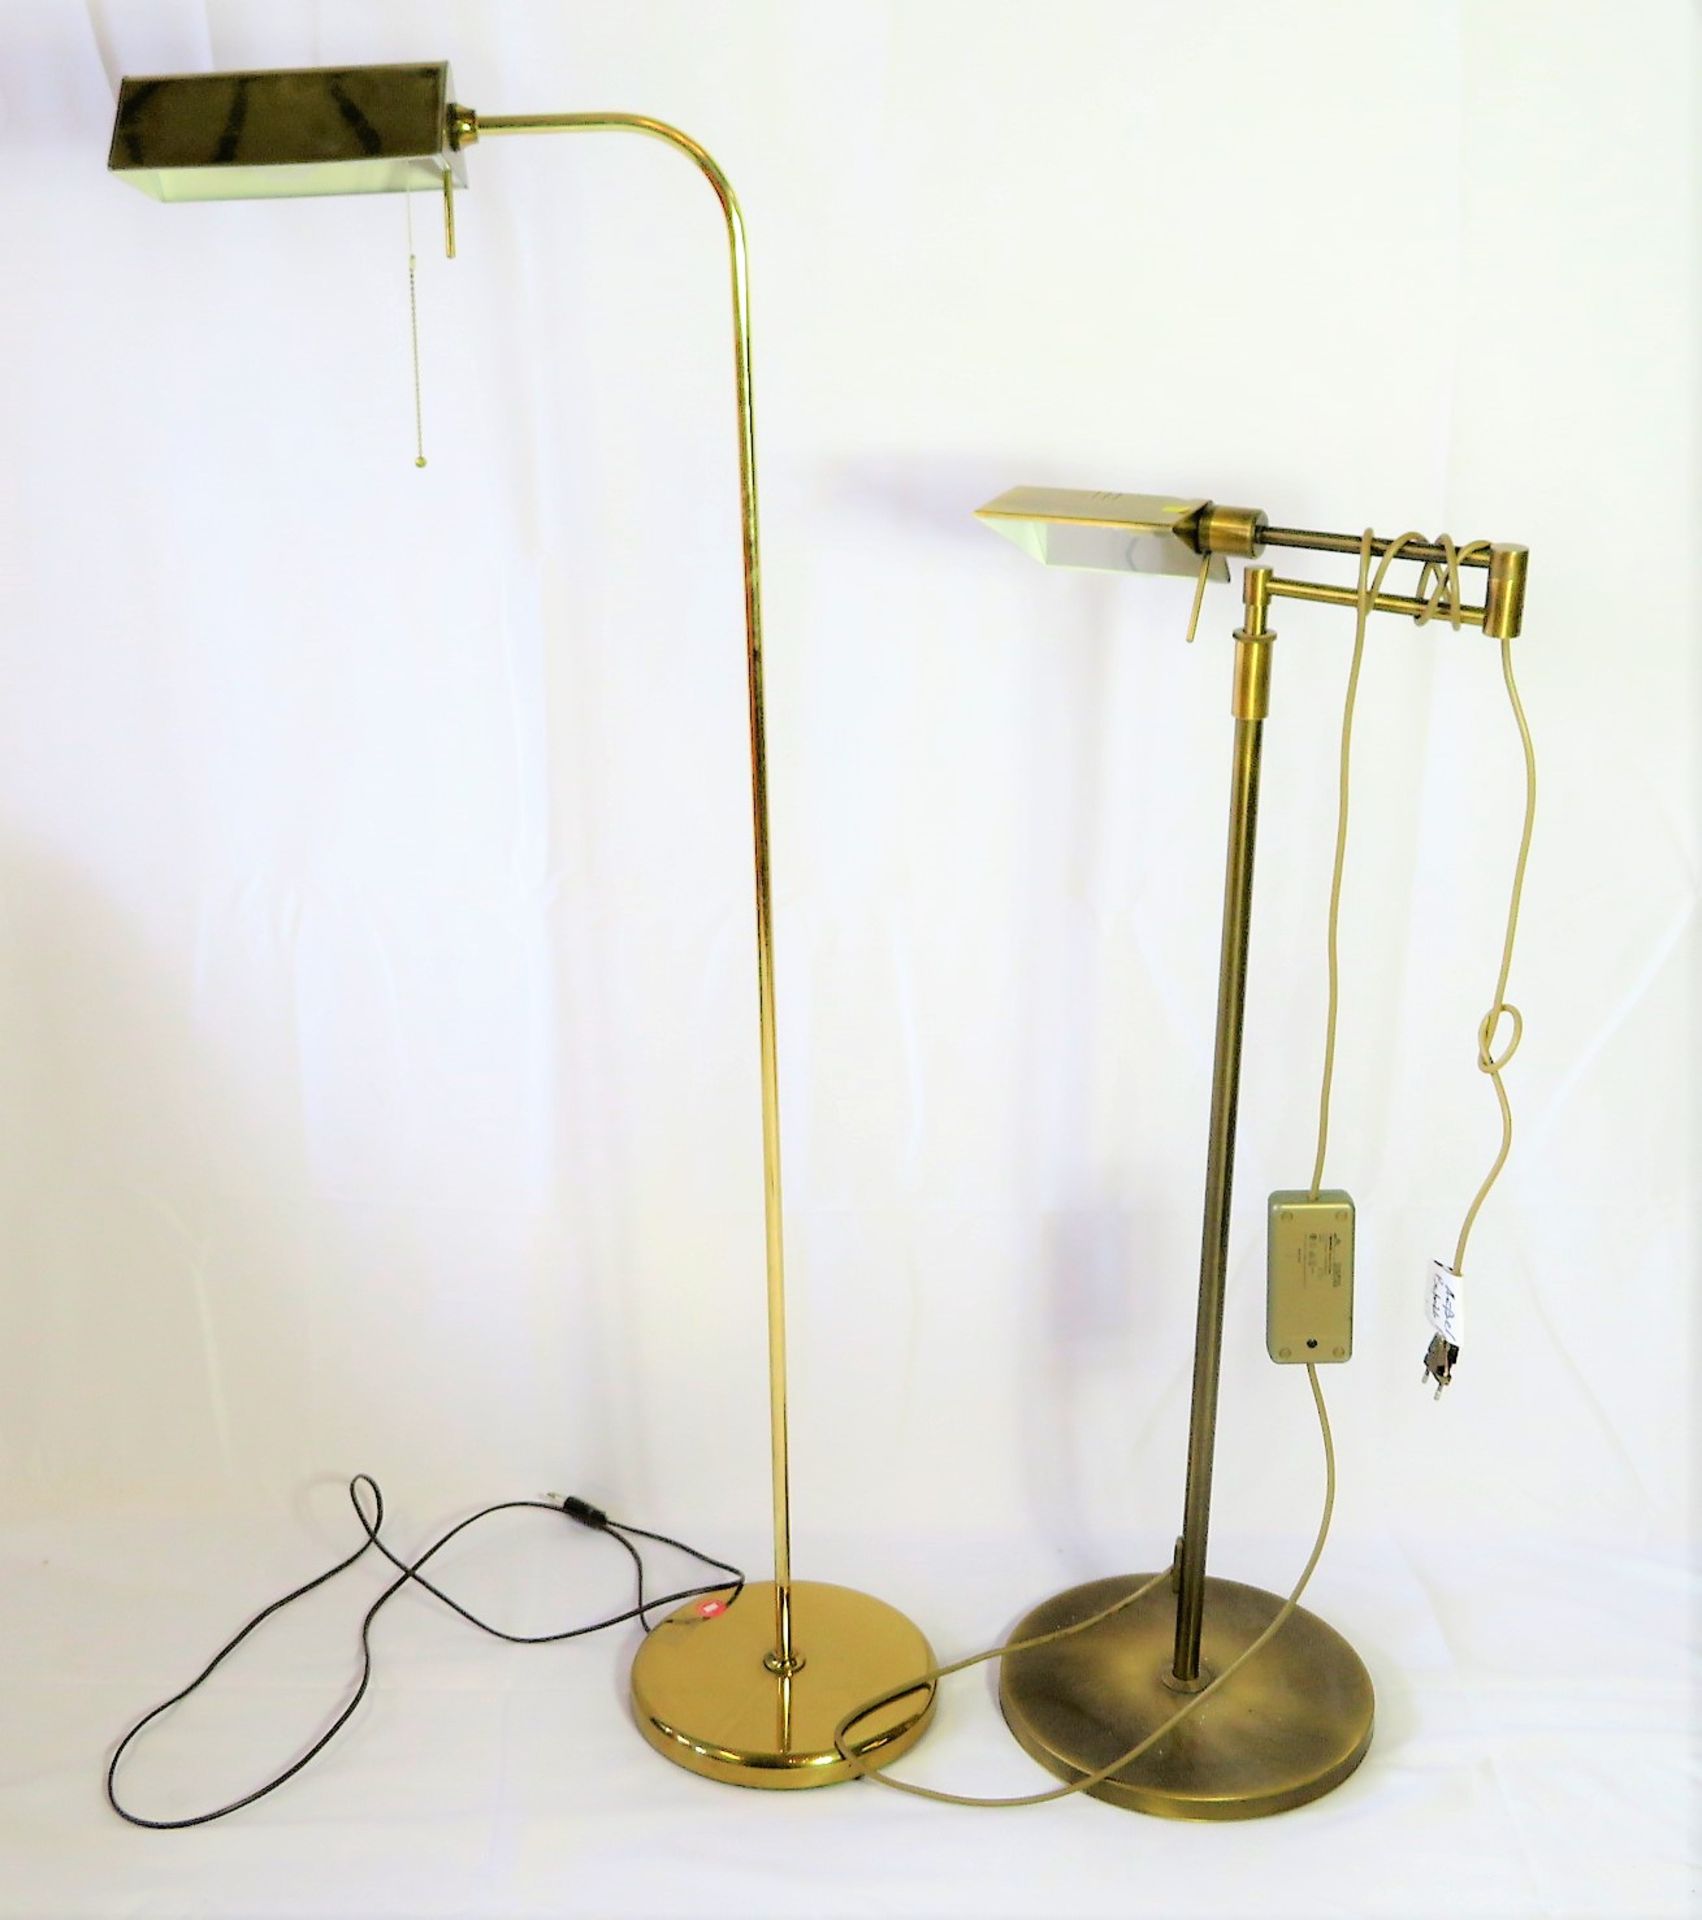 2 Vintage Stehlampen, 1970/80er Jahre, Messing, 1 x Stecker defekt, h 122/129 cm.